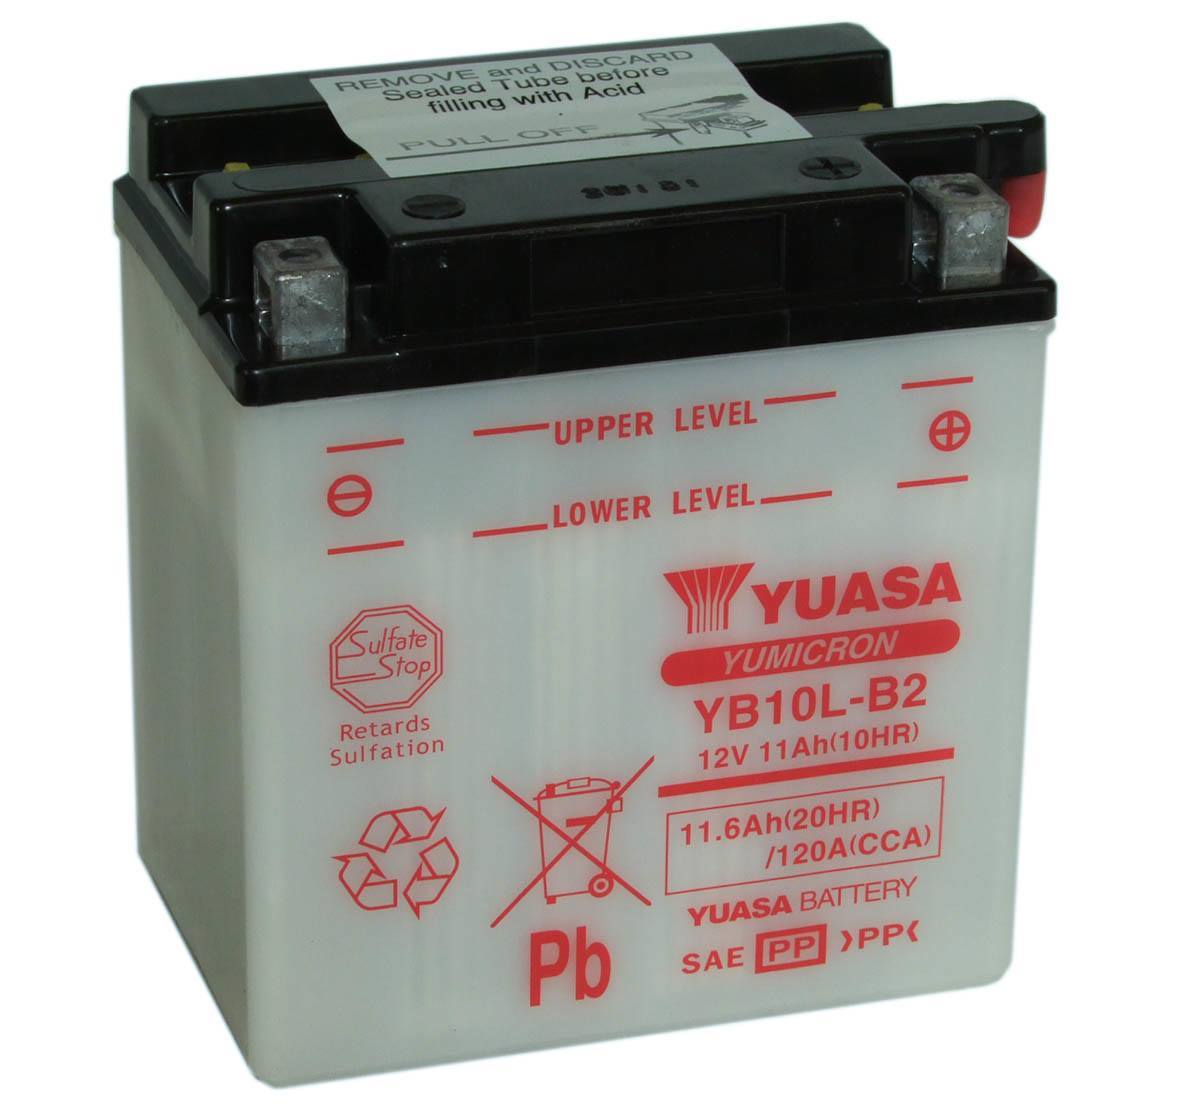 Yuasa YB10L-B2 12V Motorbike Battery